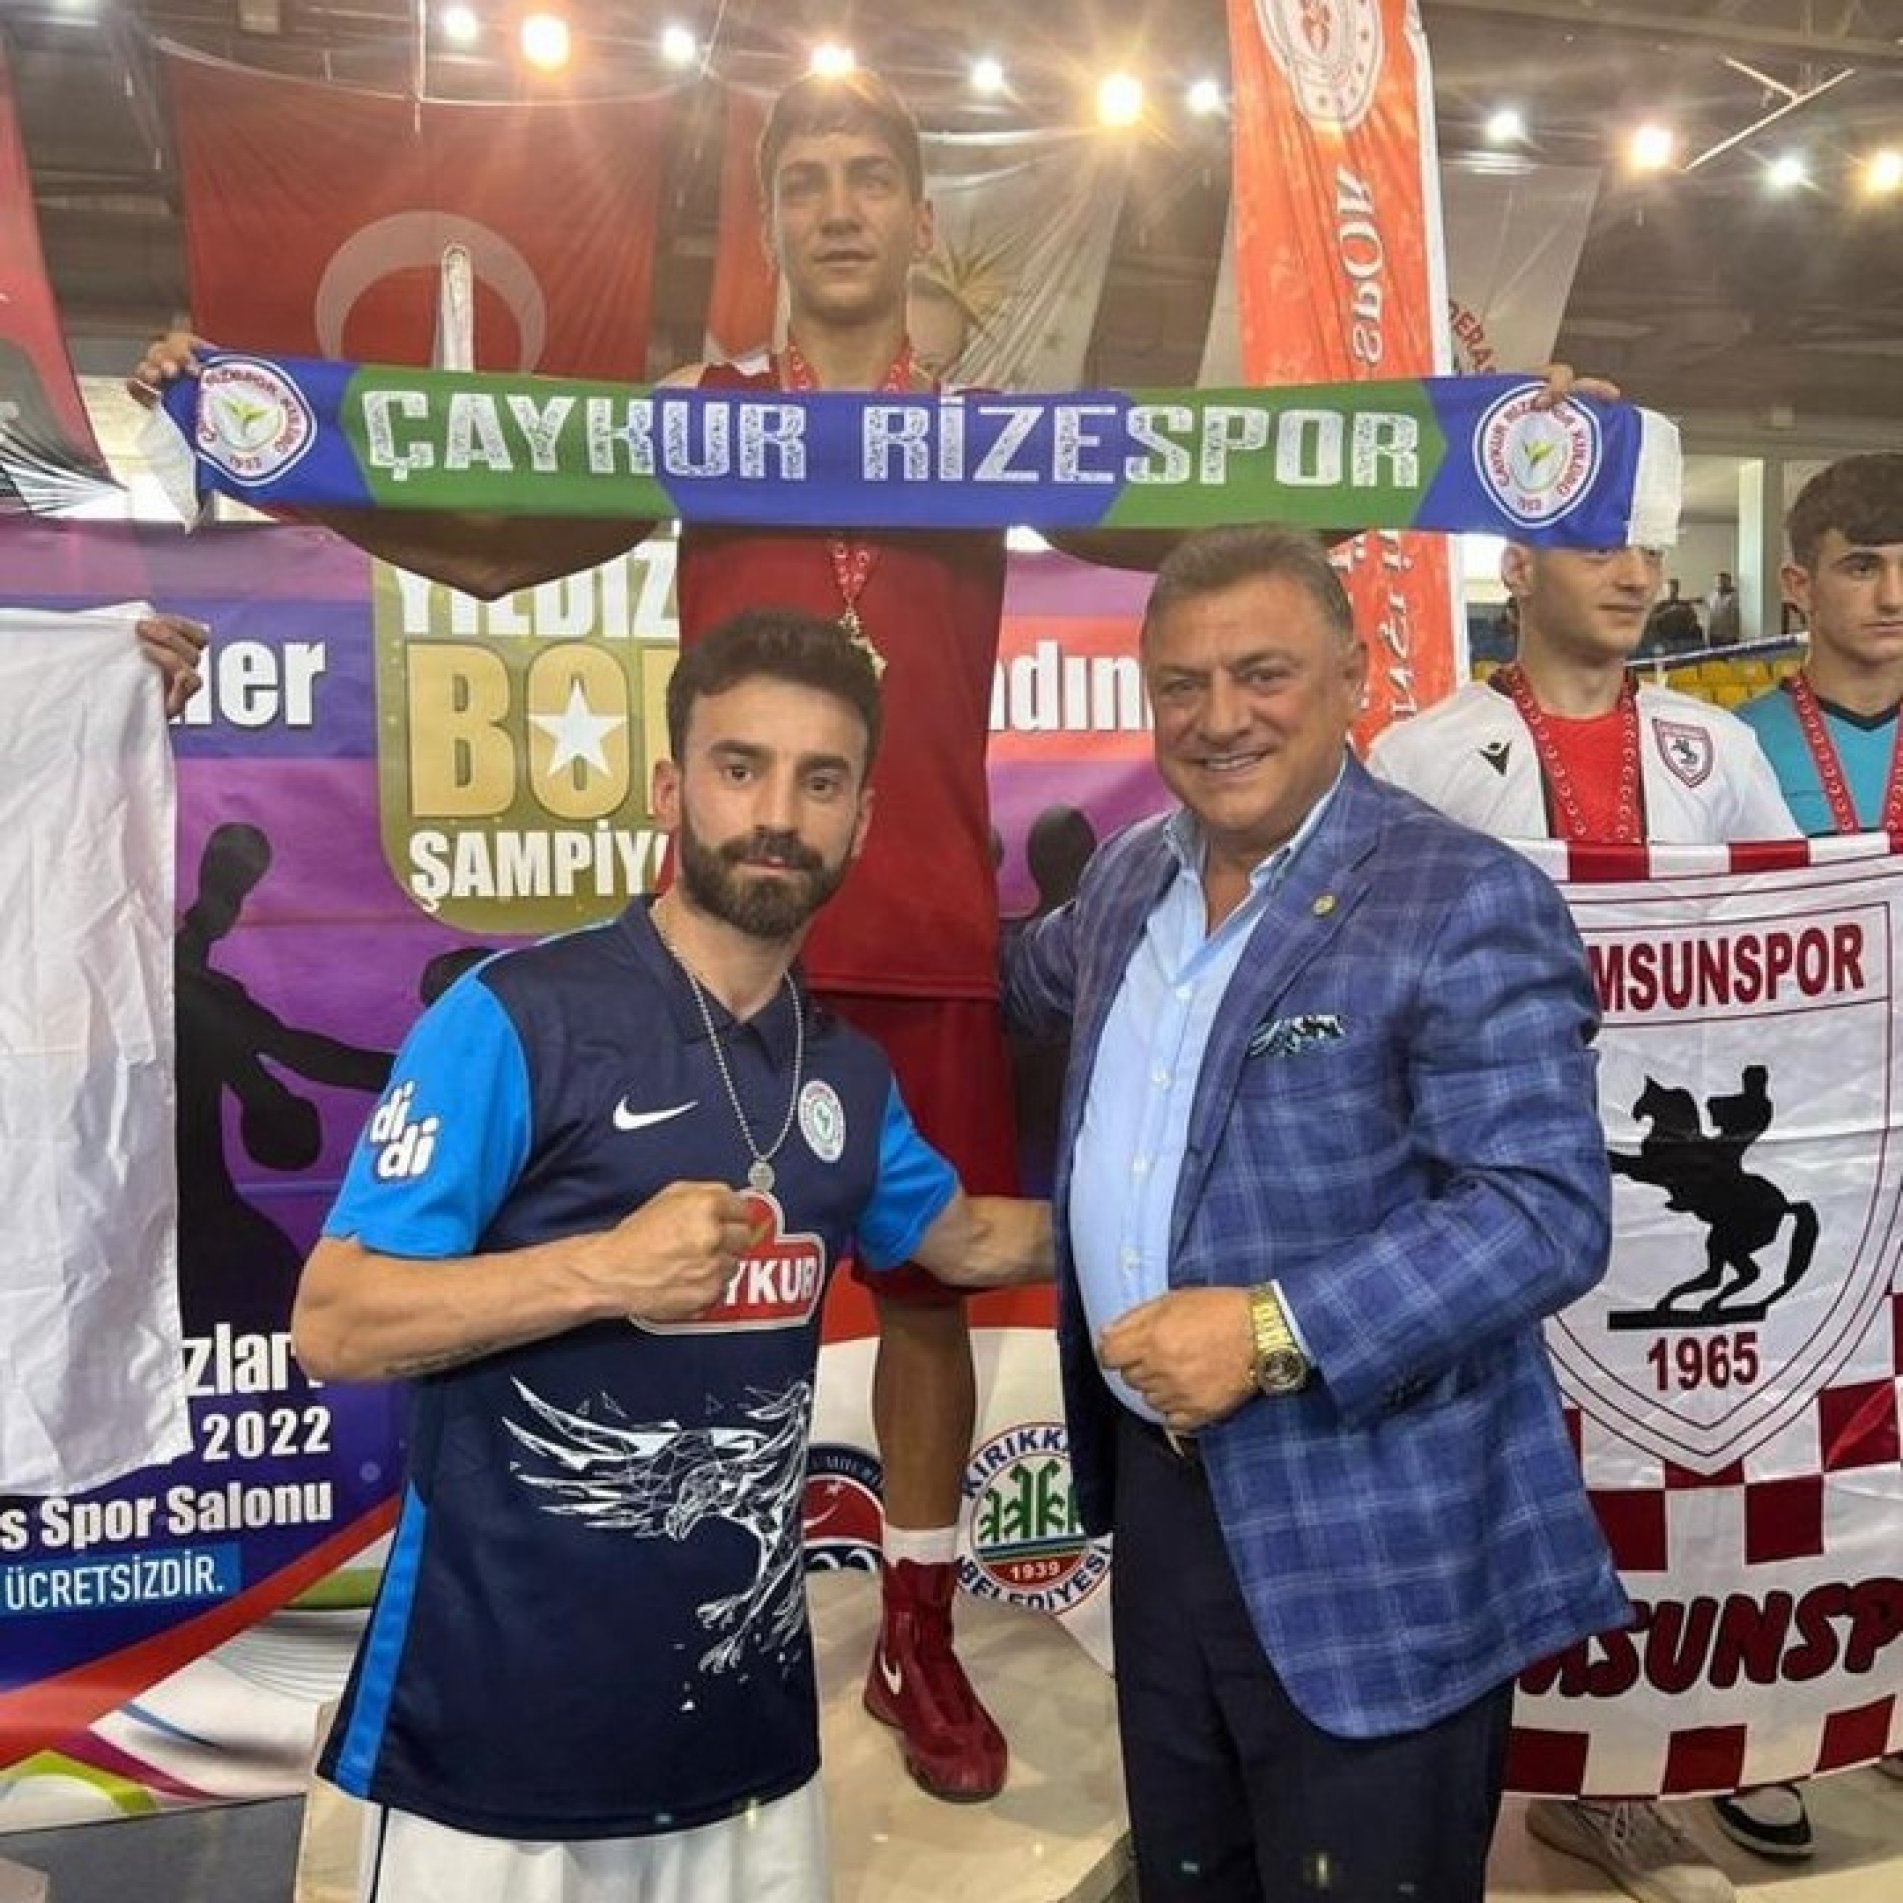 Alperen Yılmaz, Türkiye Şampiyonu Oldu